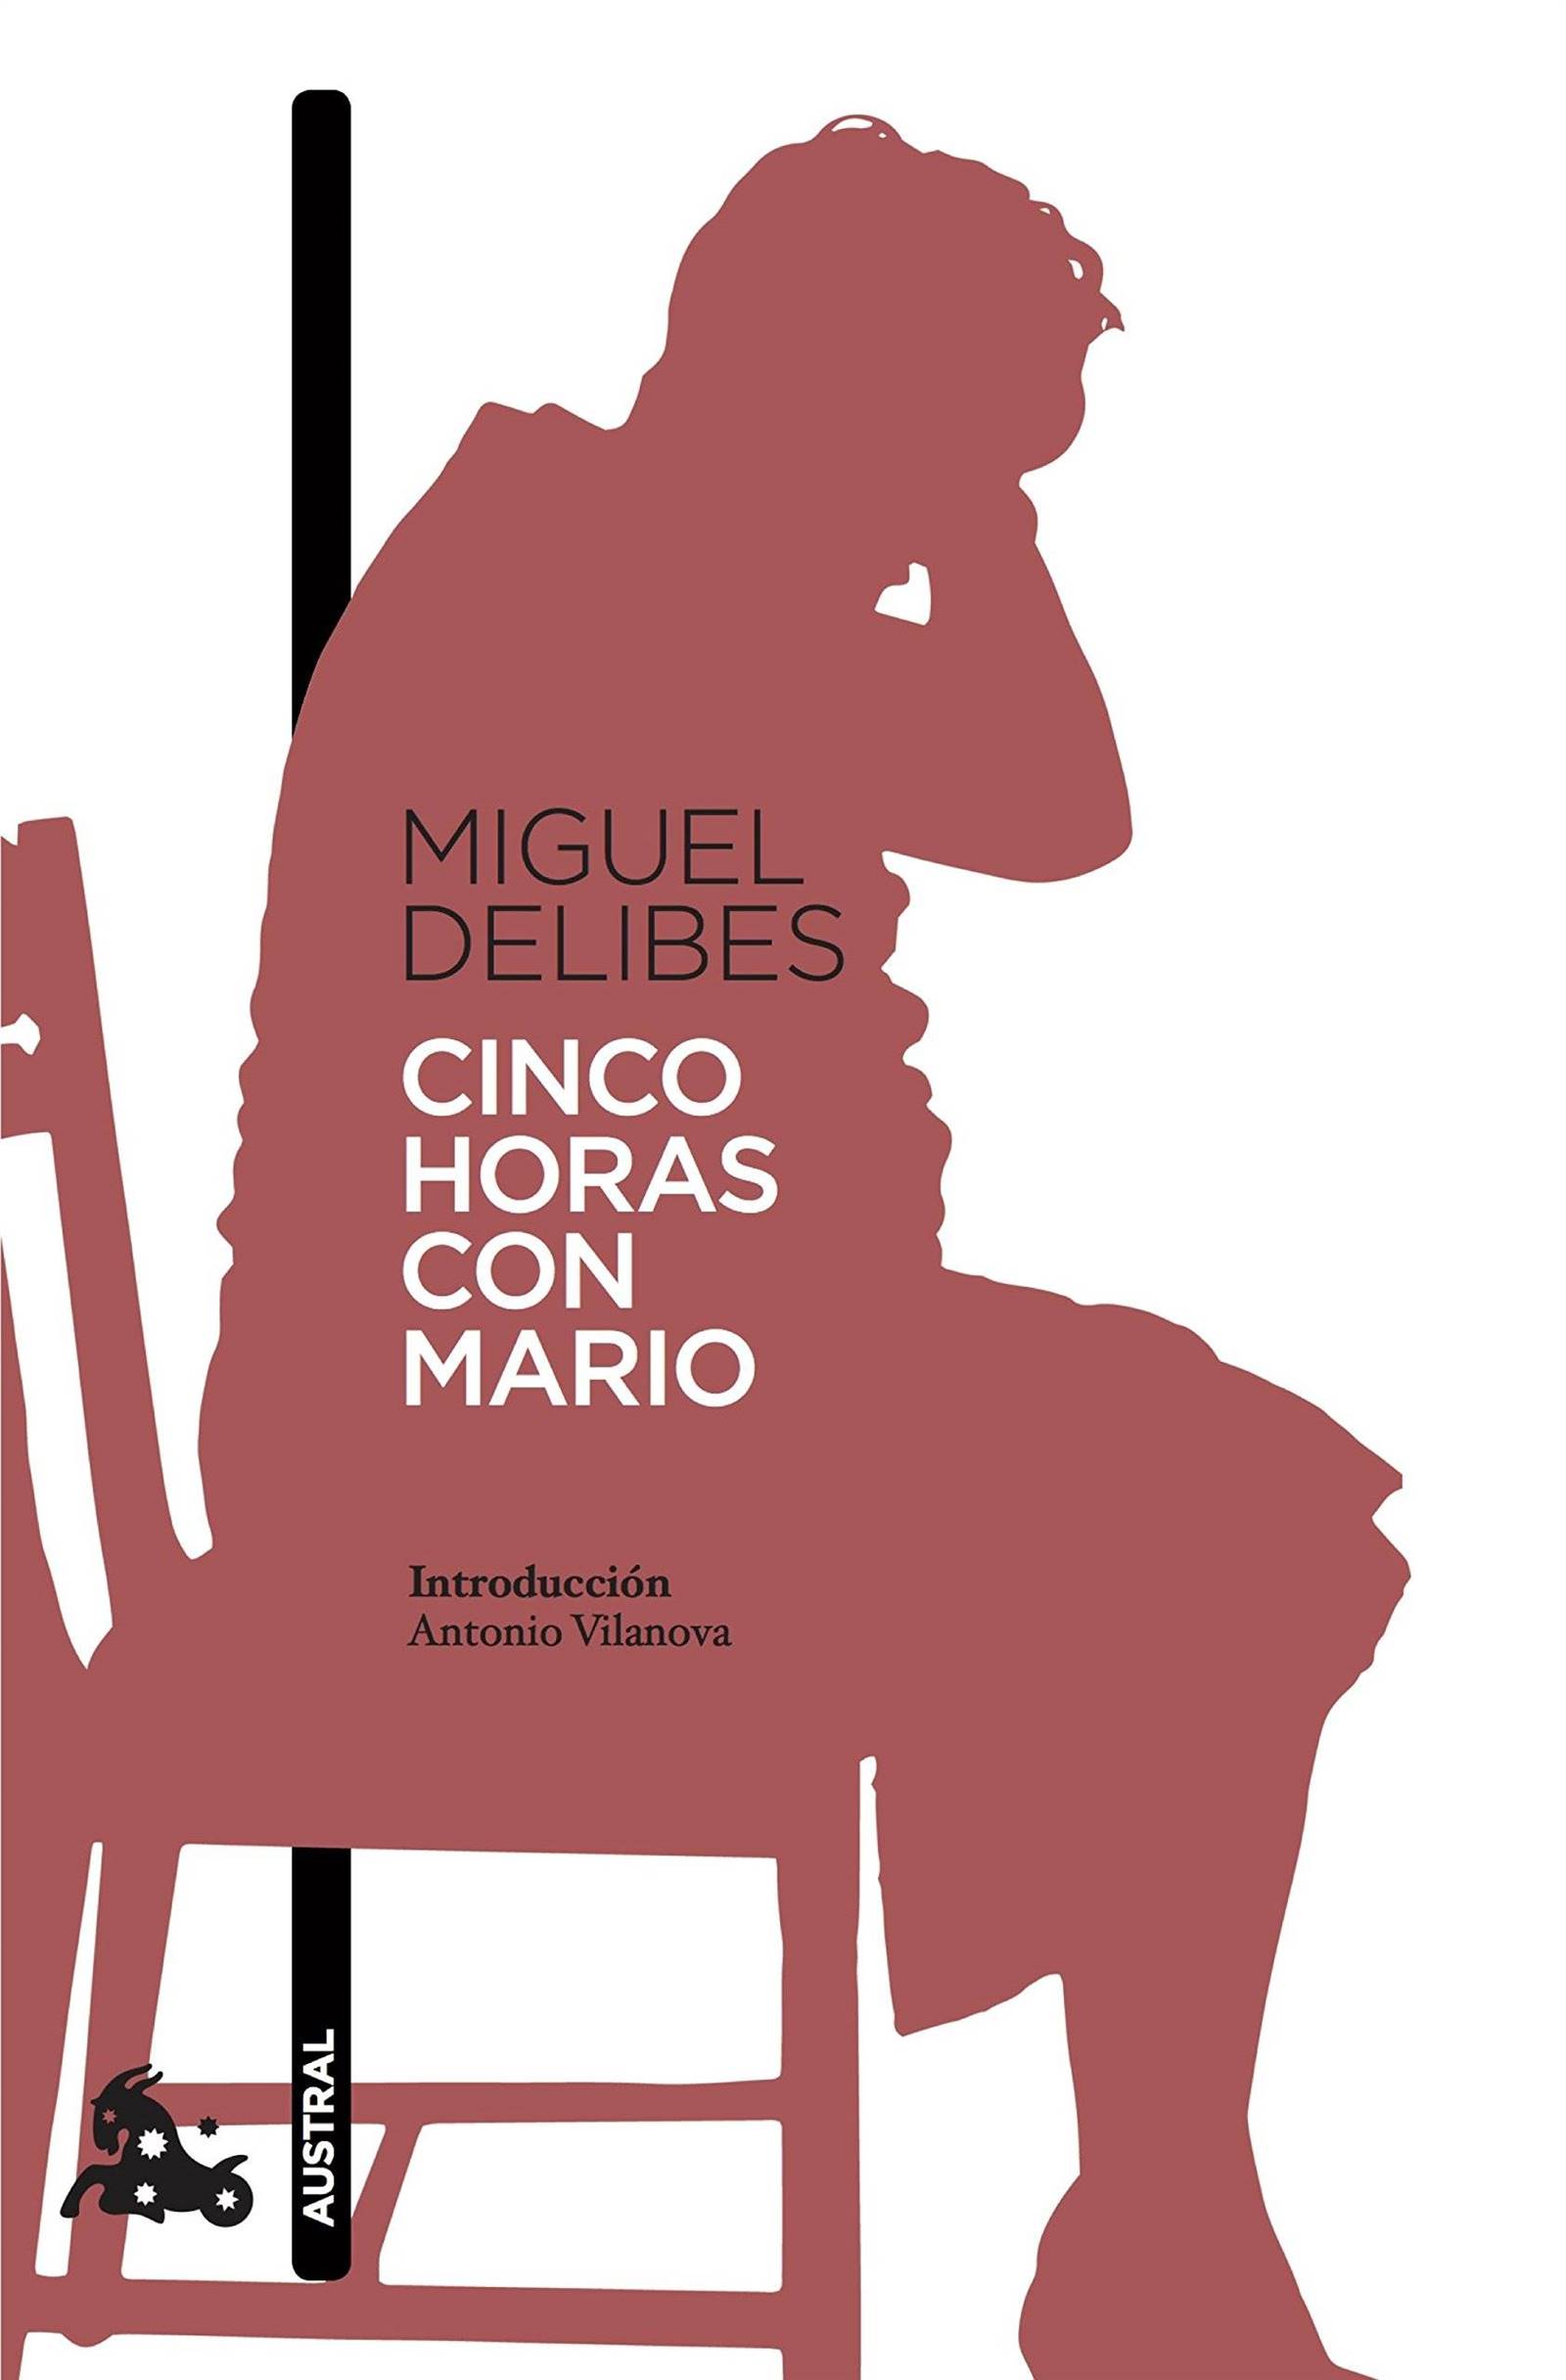 Libros que hay que leer: Cinco horas con Mario de Miguel Delibes